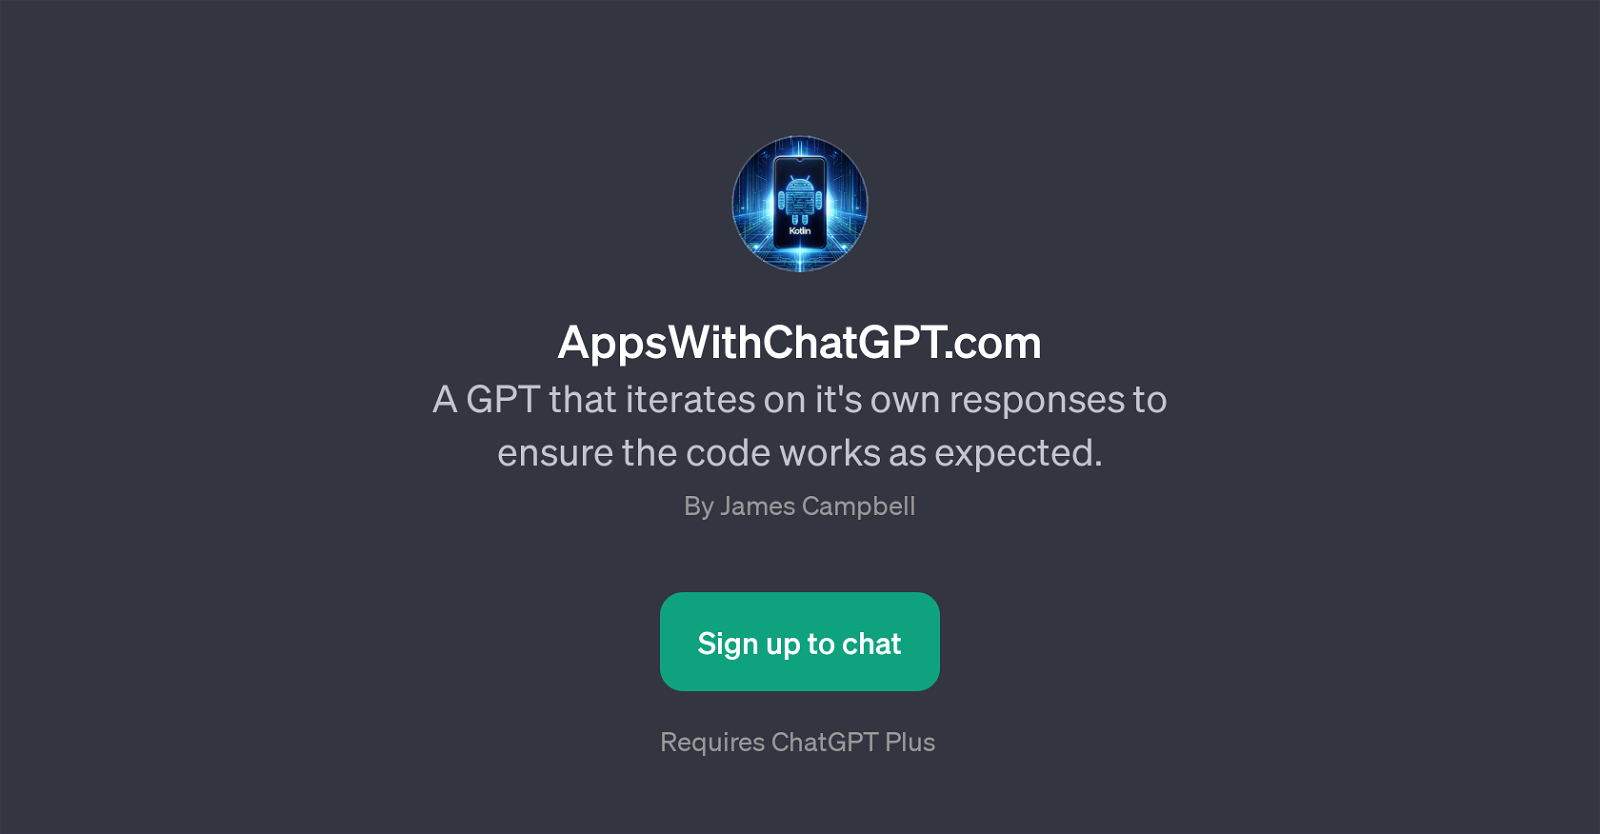 AppsWithChatGPT.com website